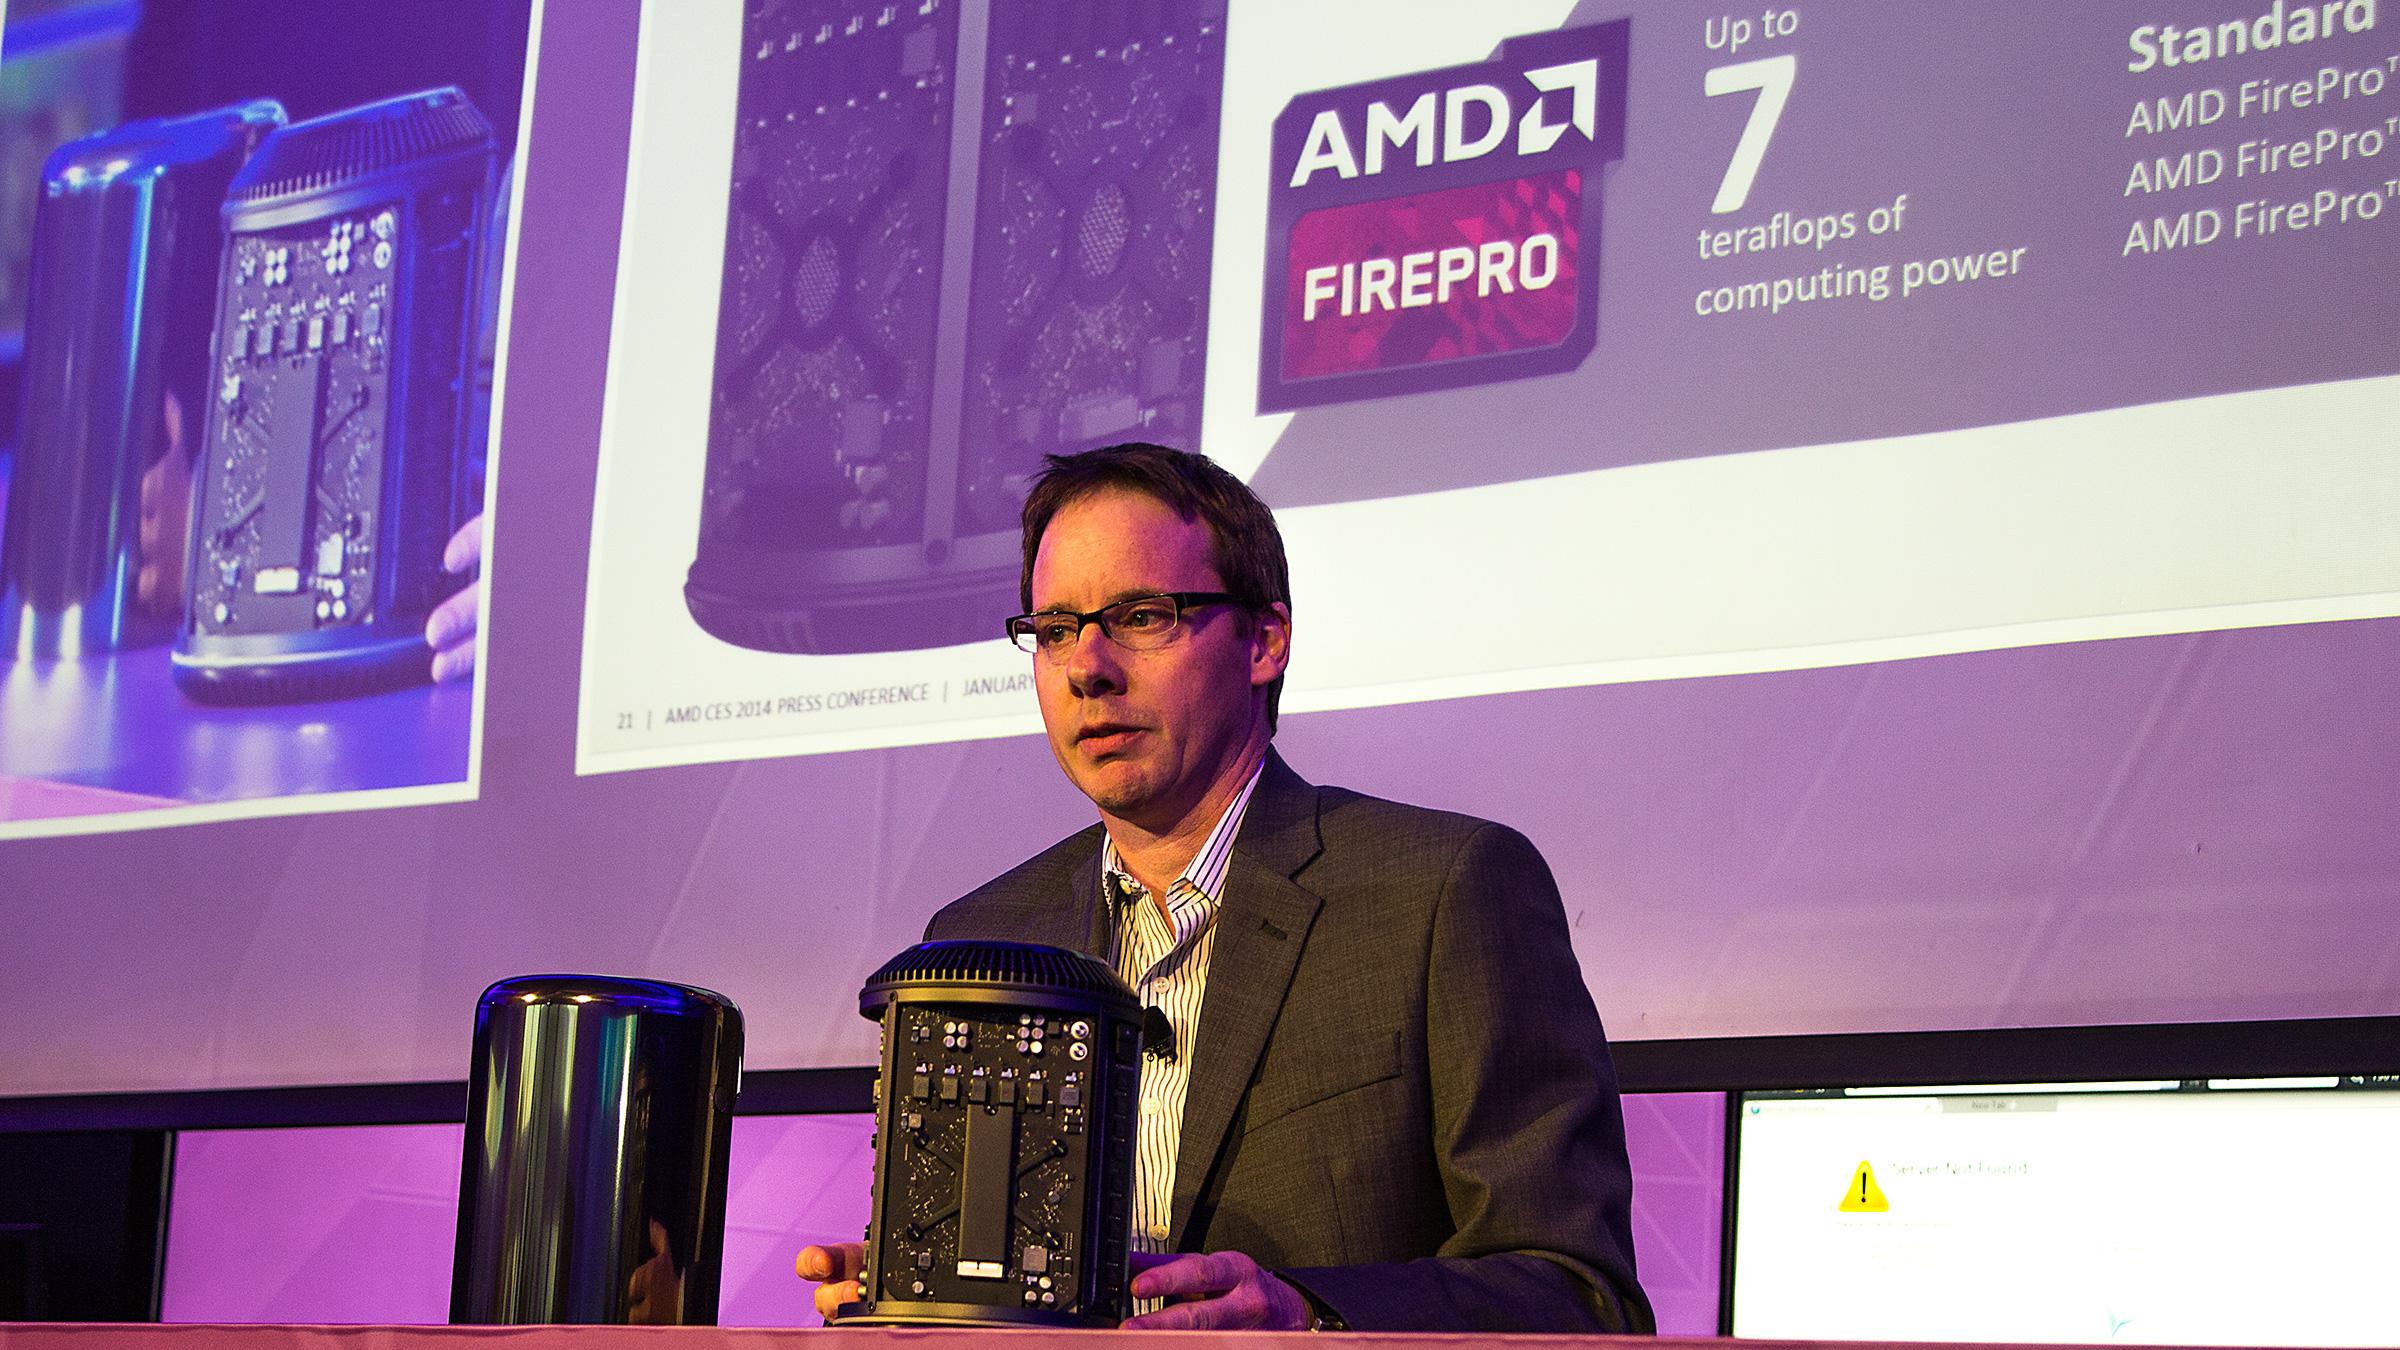 Matt Skynner viser frem AMD FirePro-innmaten i en Mac Pro arbeidsstasjon.Foto: Varg Aamo, Hardware.no